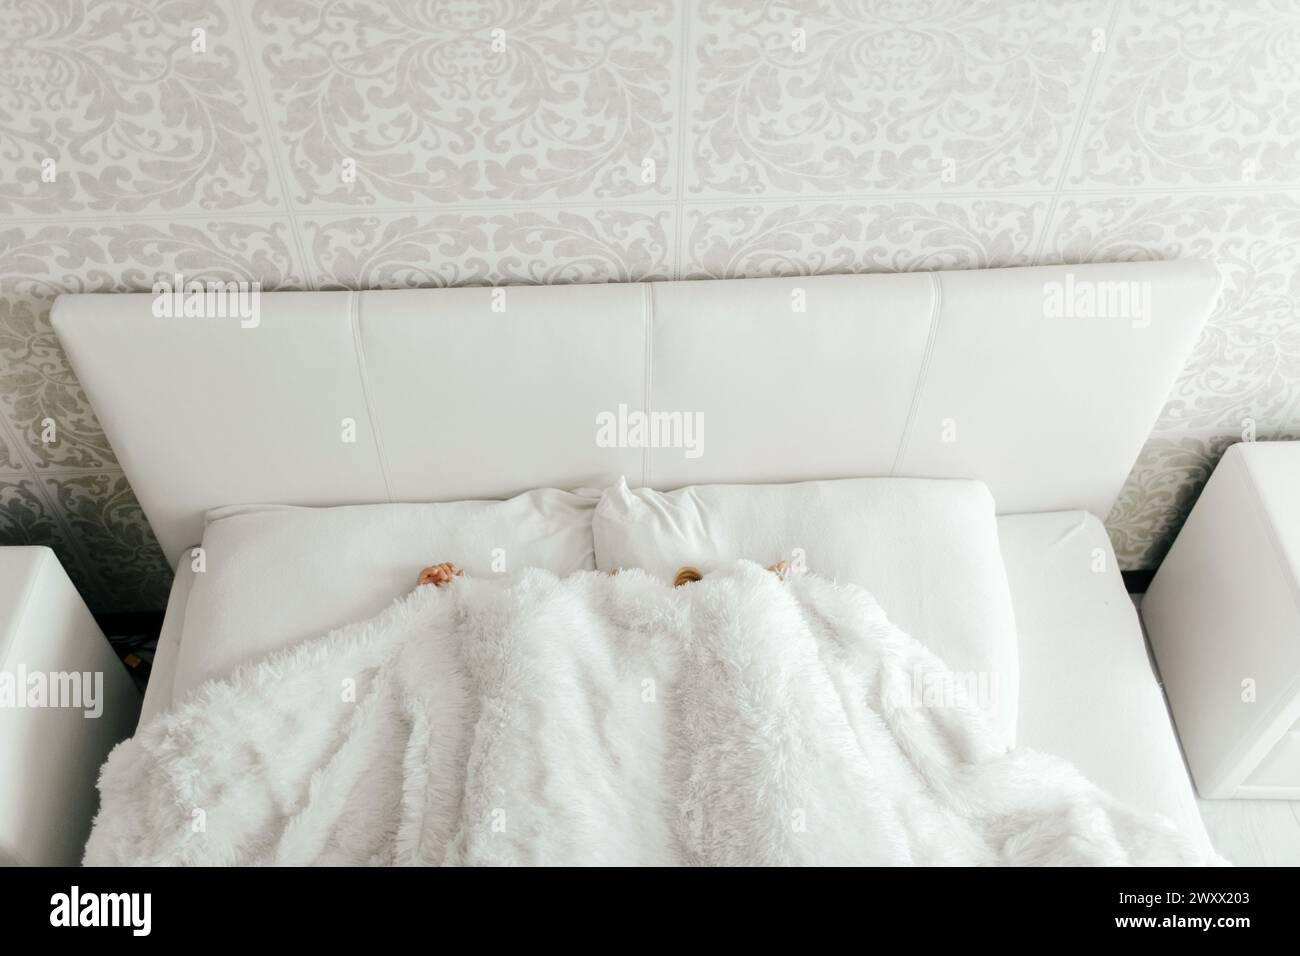 Deux jeunes filles sont allongées sur un lit avec des draps blancs, recouvertes d'une couverture. Banque D'Images